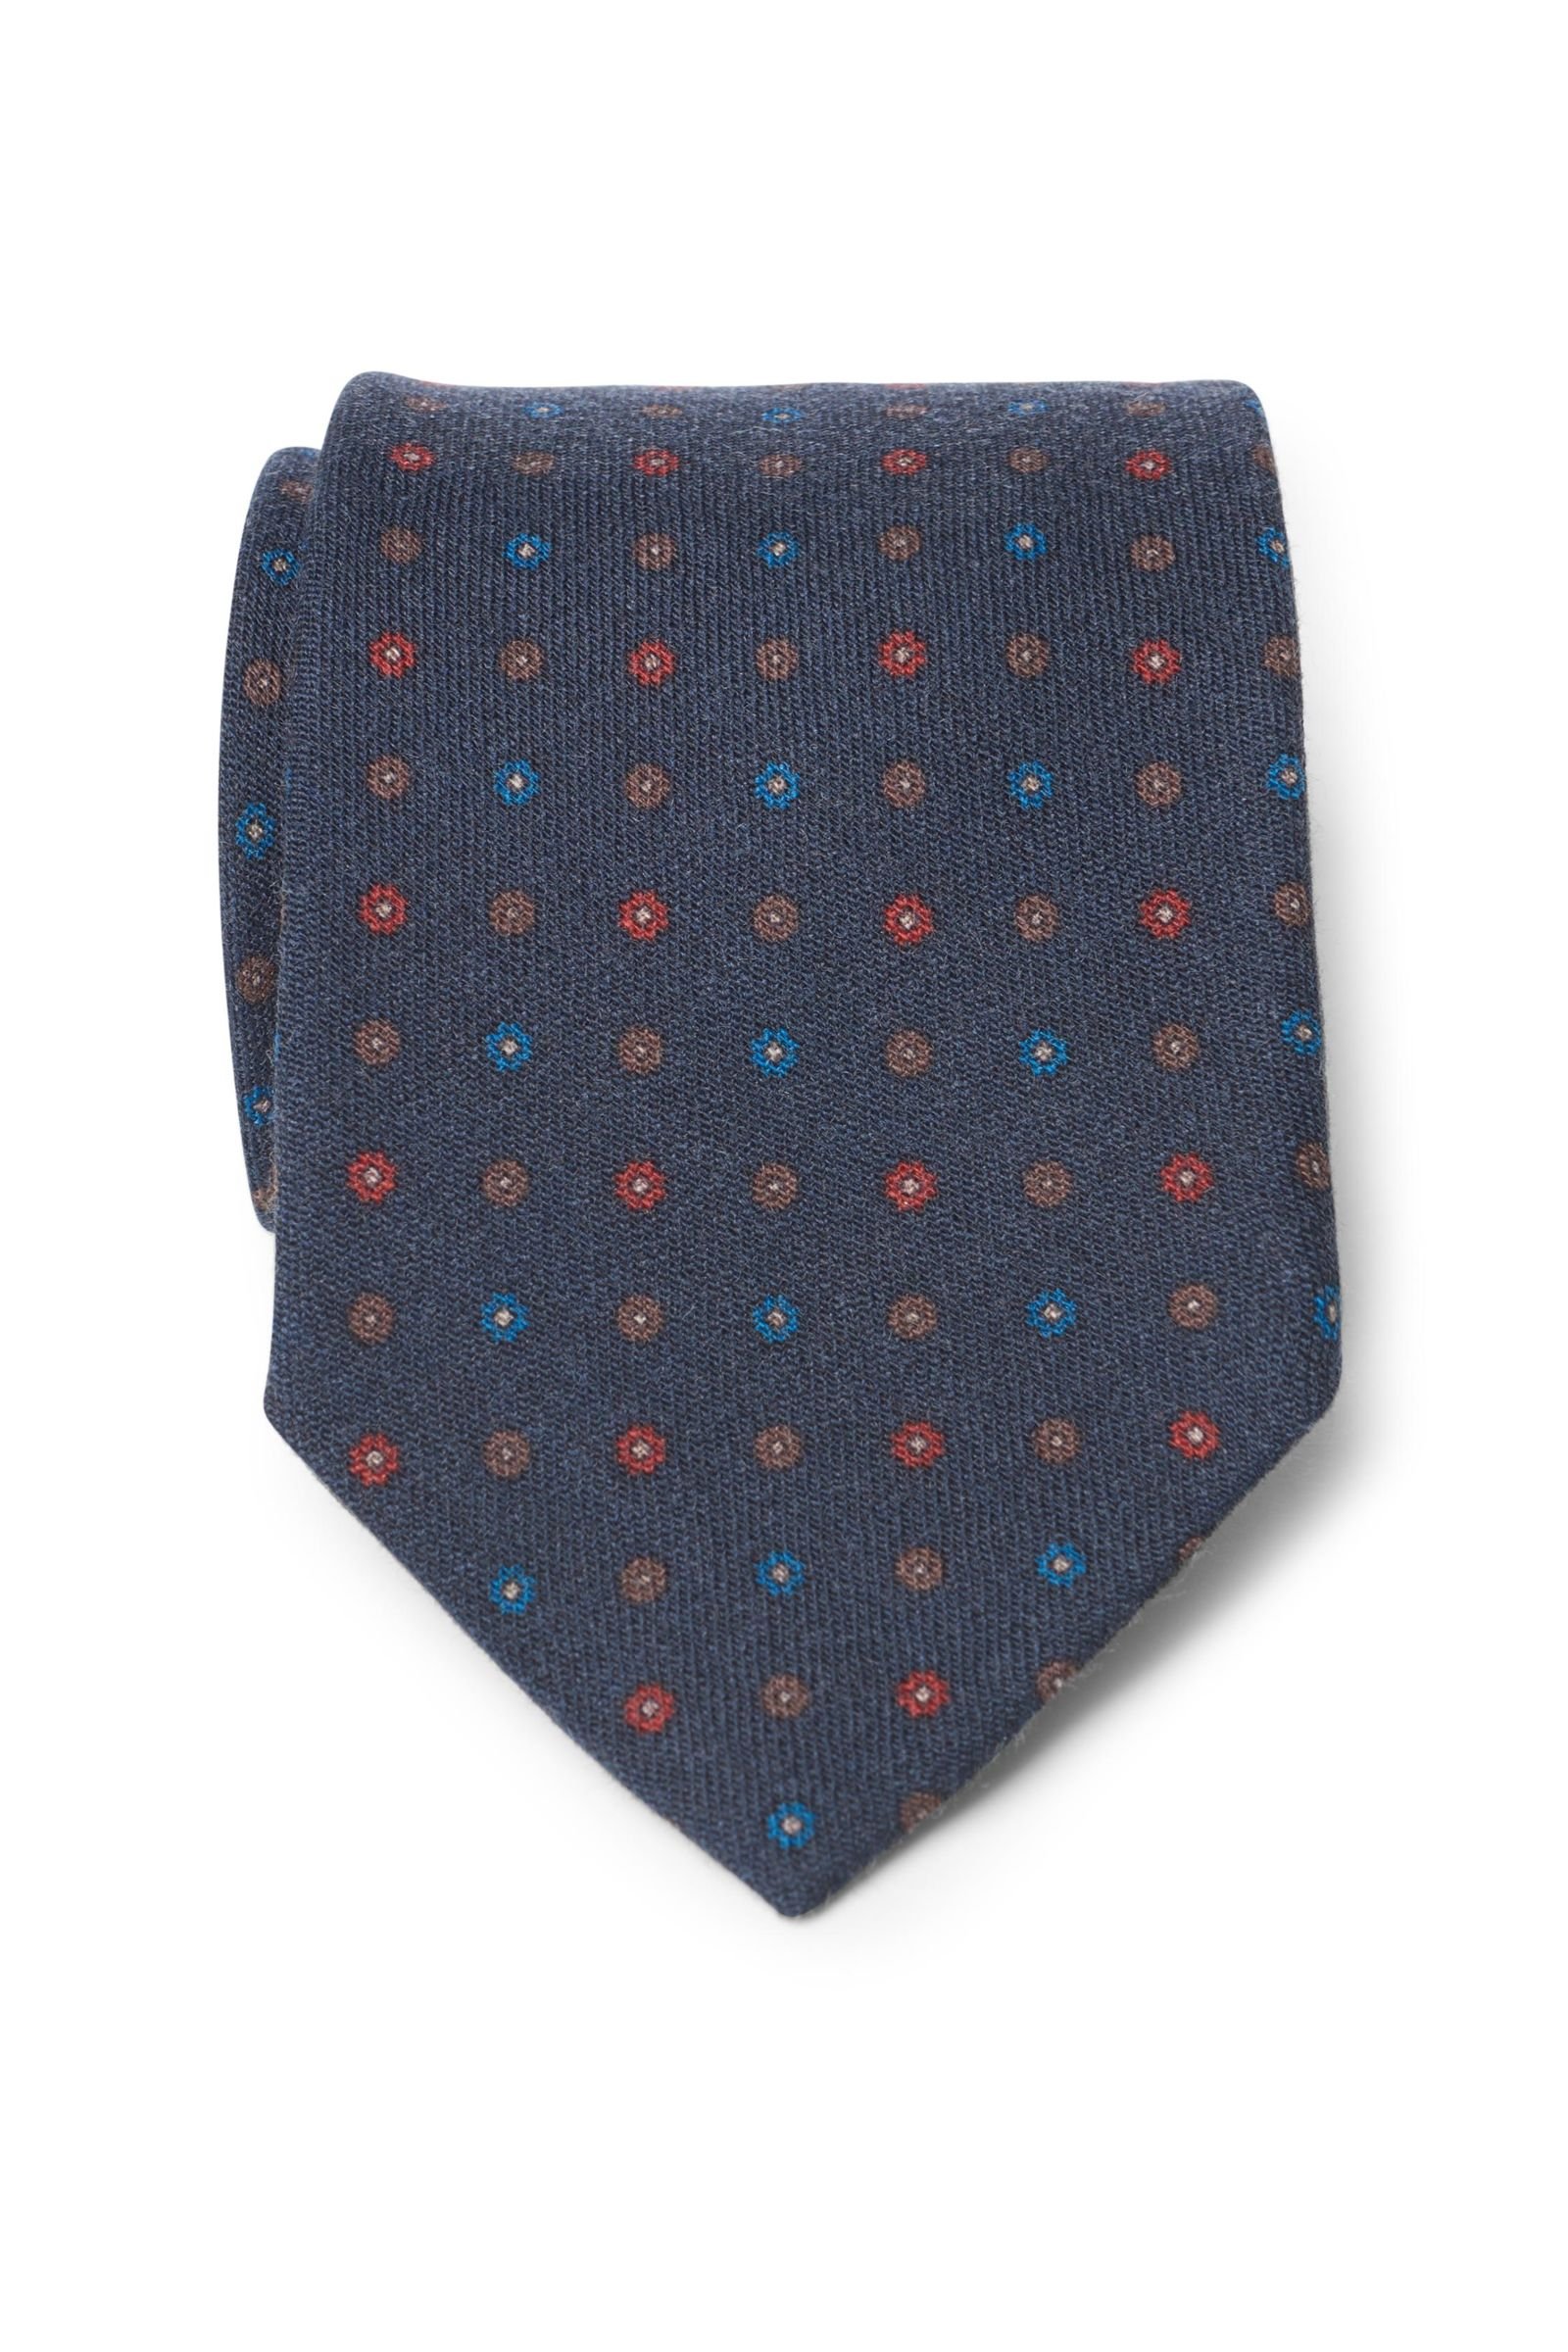 Wool tie dark blue patterned